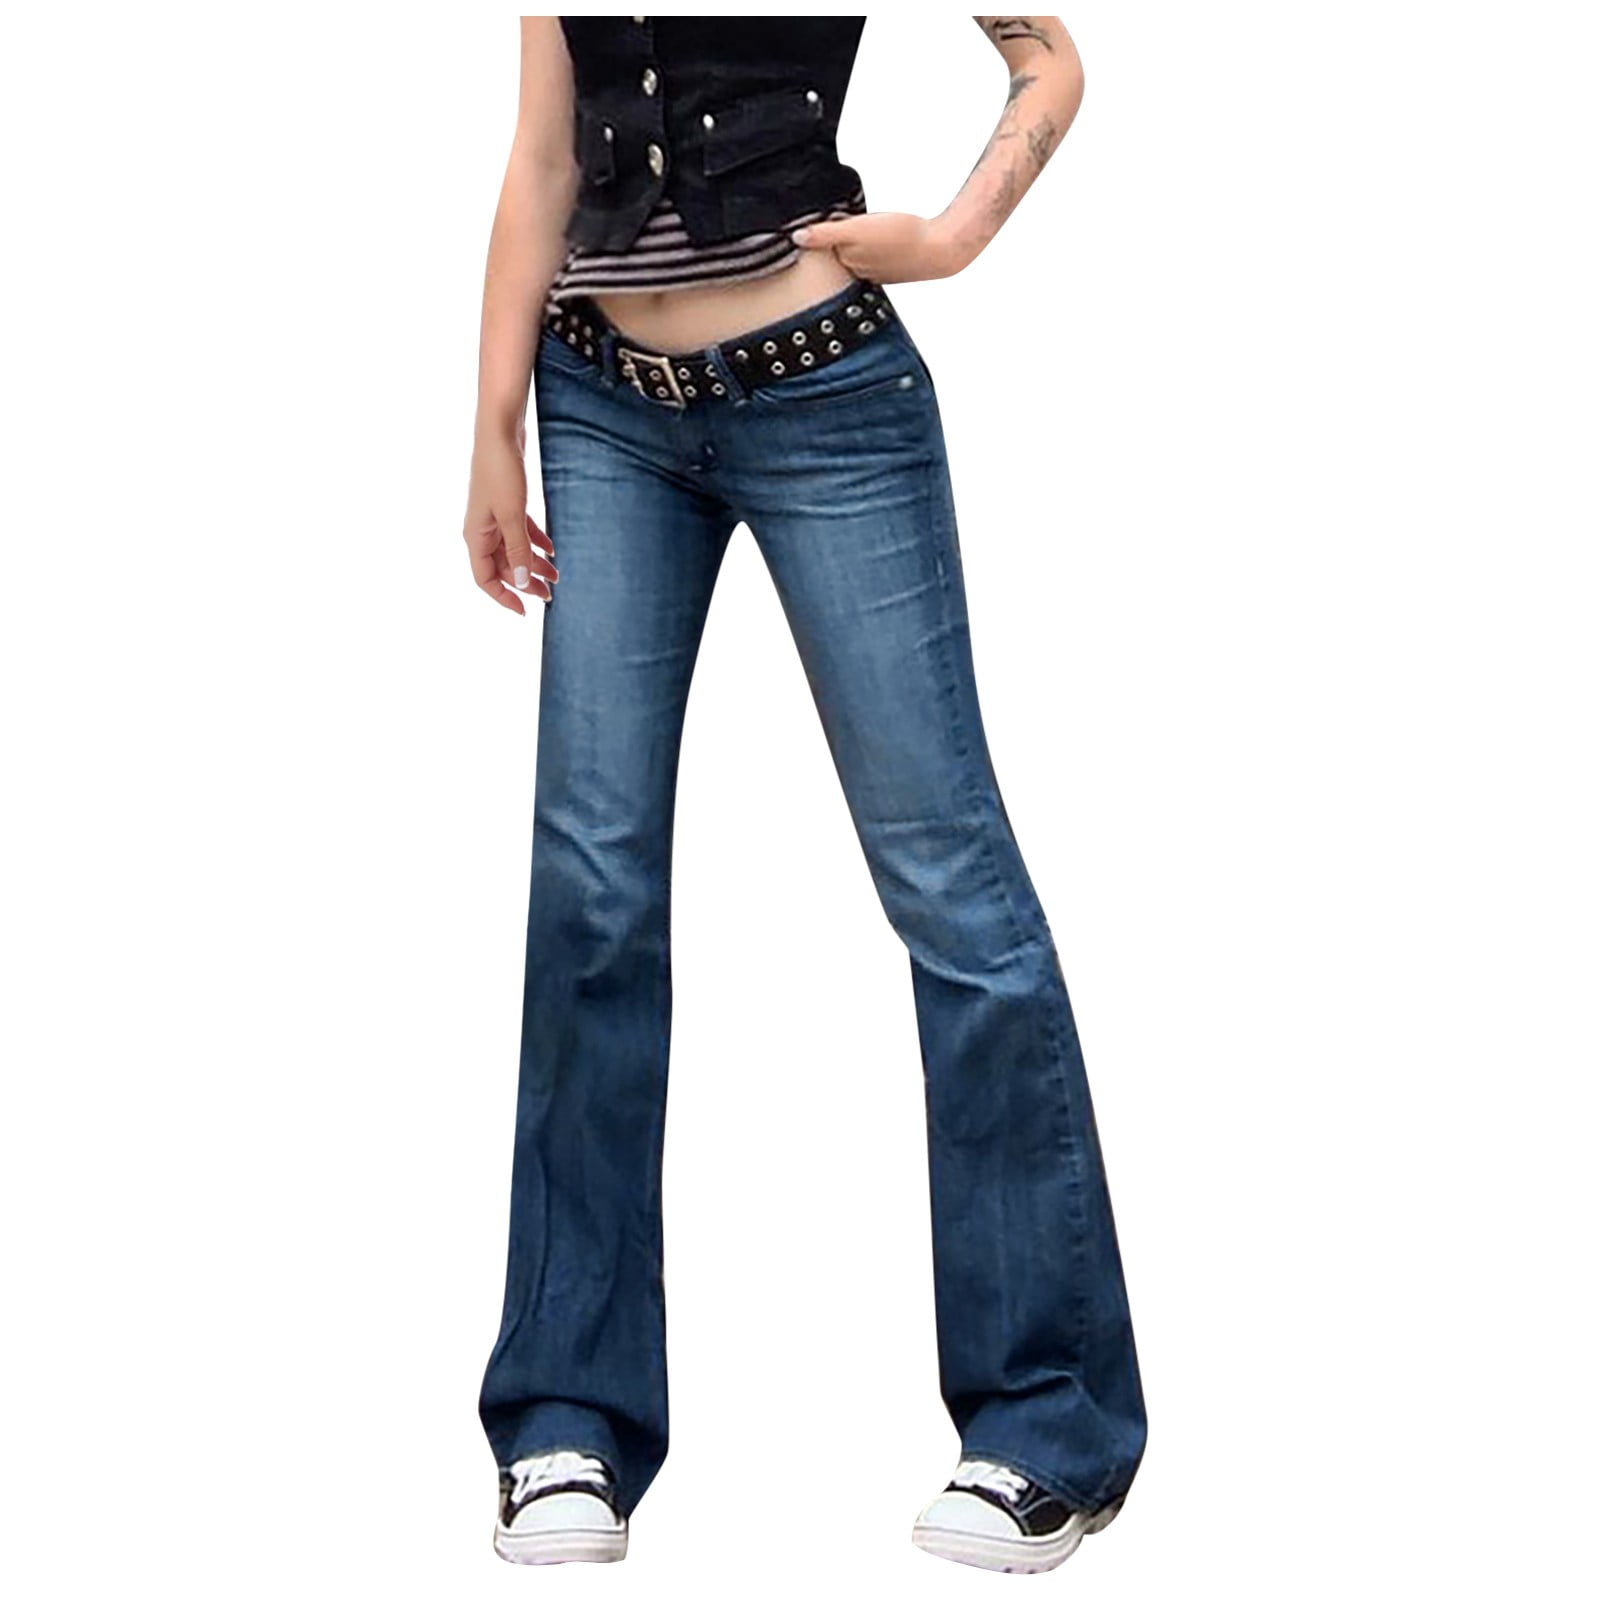 Frehsky leggings for women Women's Denim Print Jeans Look Like Leggings  Stretchy High Waist Slim Skinny Jeggings Dark Blue 